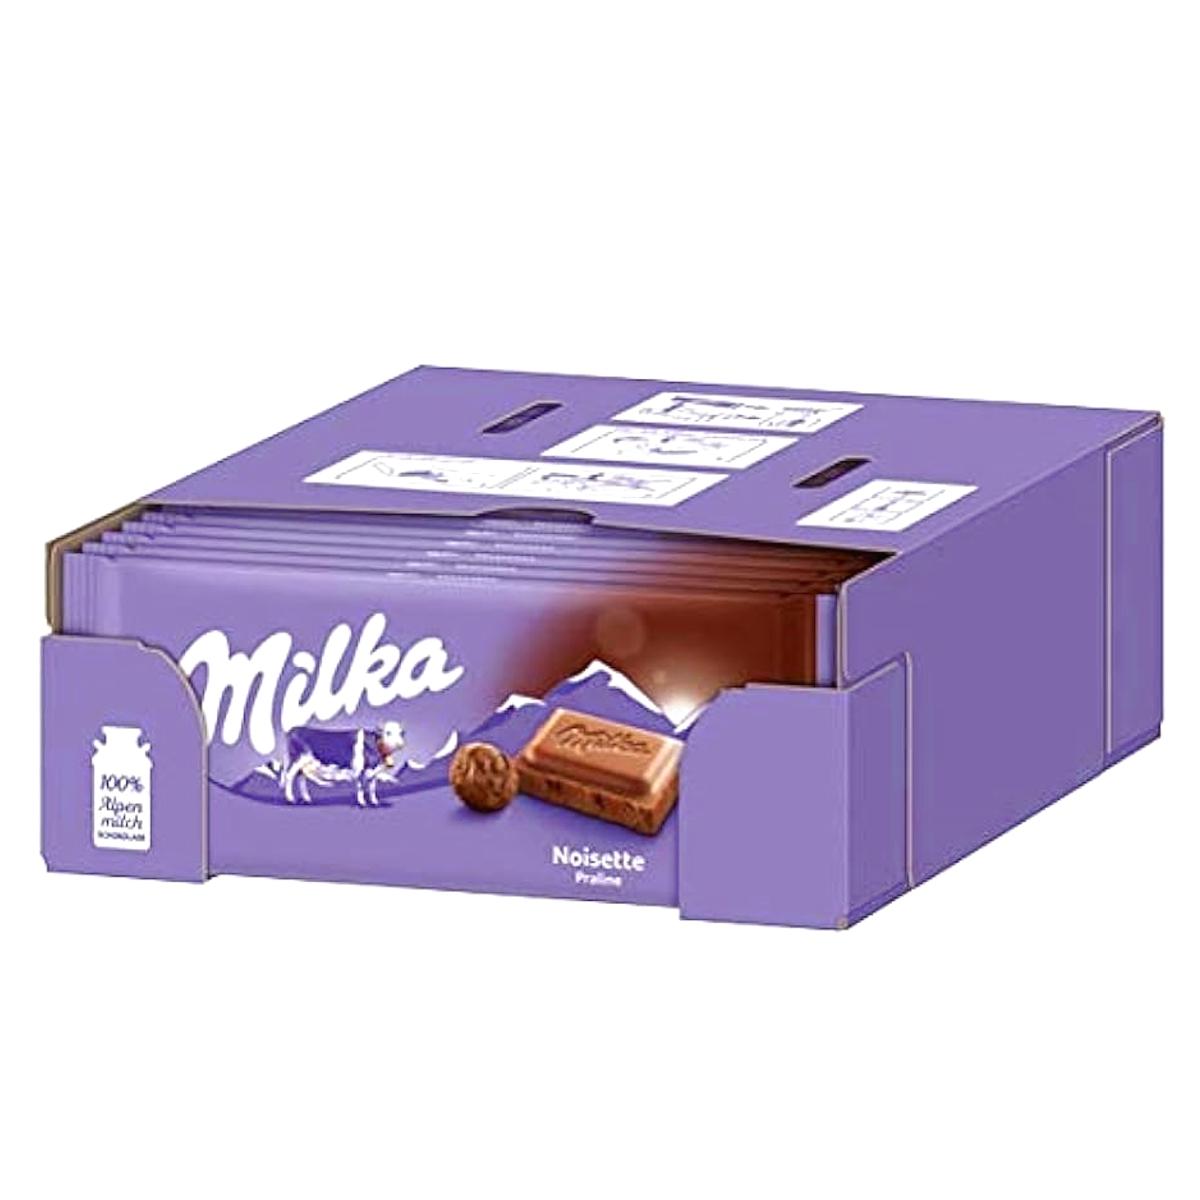 Selected image for Milka Noisette Čokolada, 80g, 27 komada